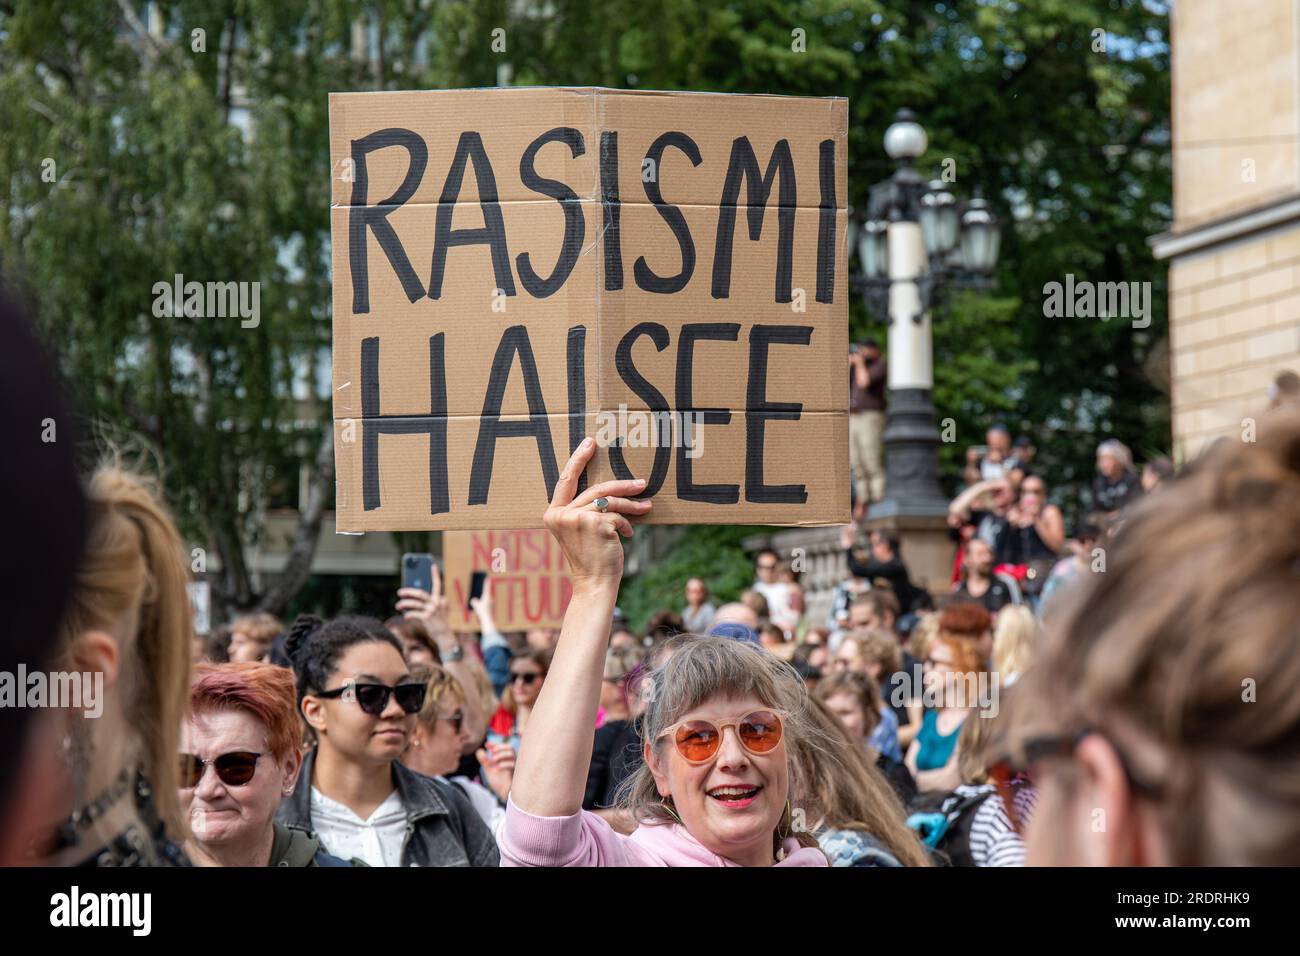 Rasismi haisee. Manifestante con un cartello di cartone fatto a mano a Nollatoleranssi! Manifestazione Rasistit ulos hallituksesta a Helsinki, Finlandia. Foto Stock